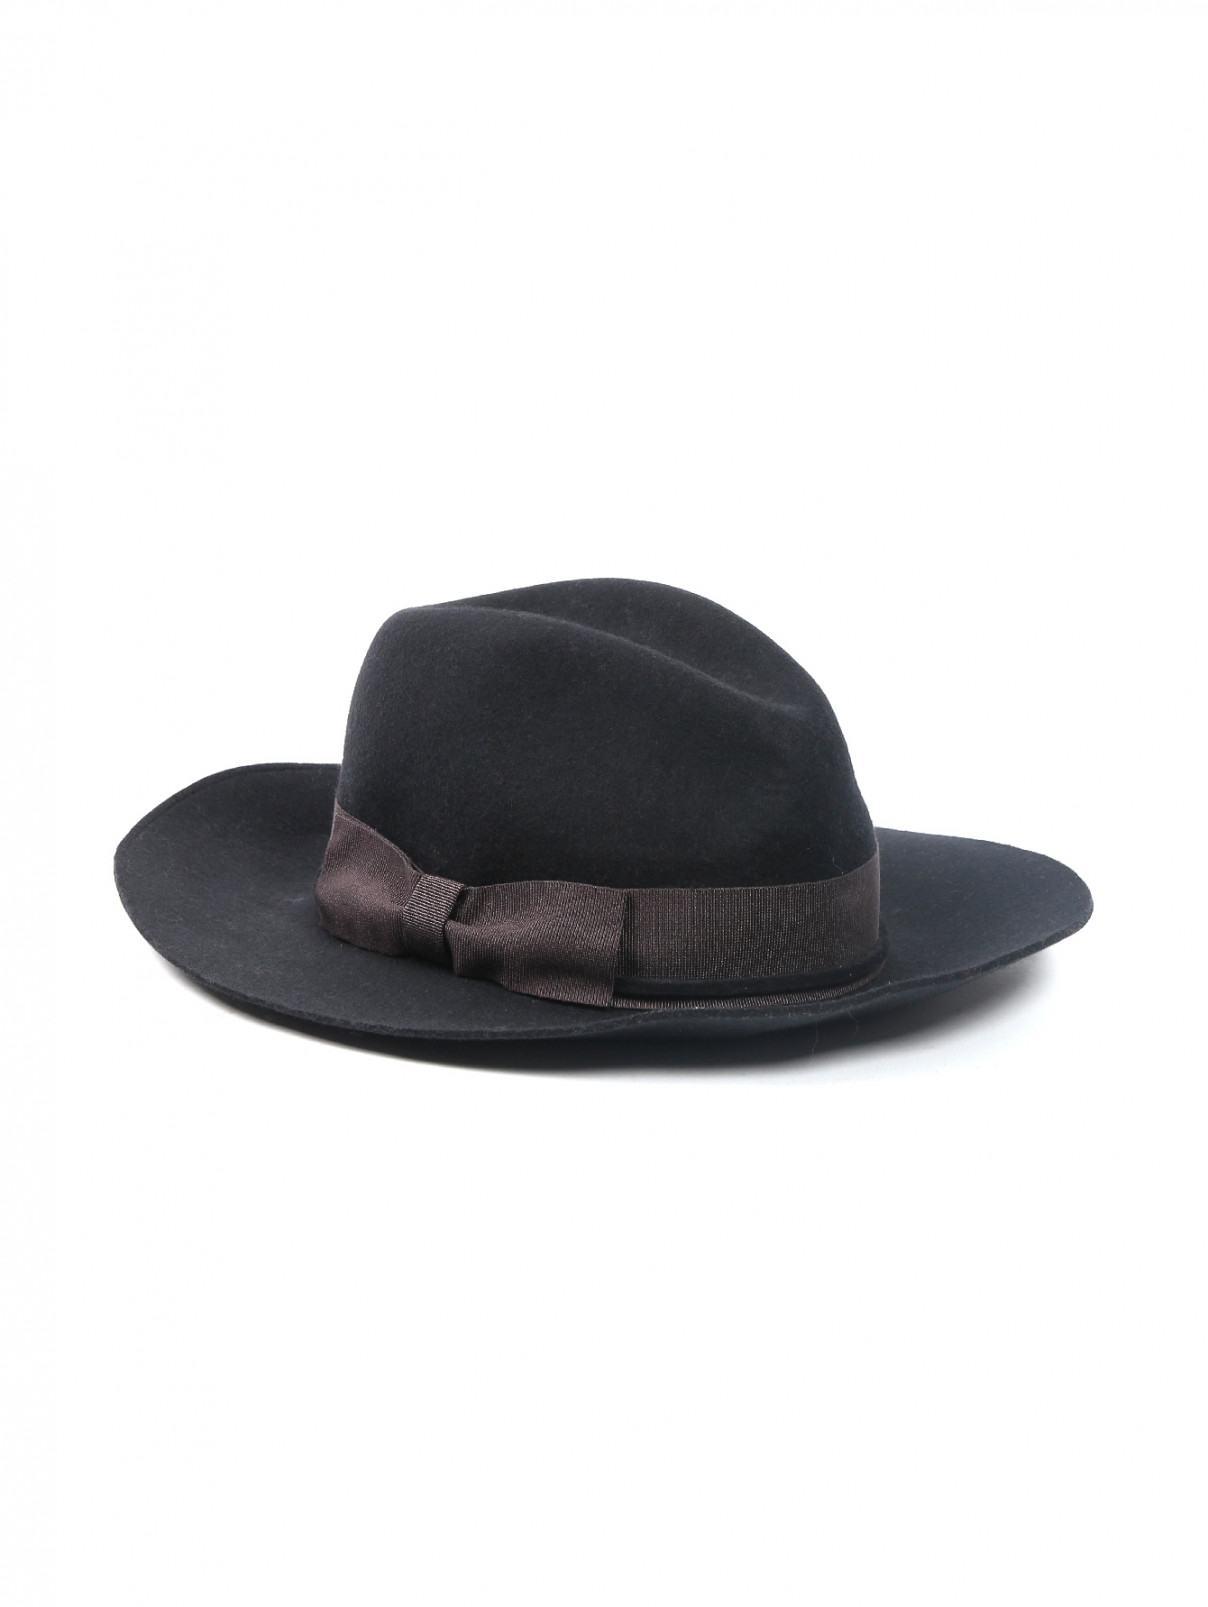 Шляпа из шерсти, декорированная лентой Marzi  –  Общий вид  – Цвет:  Черный